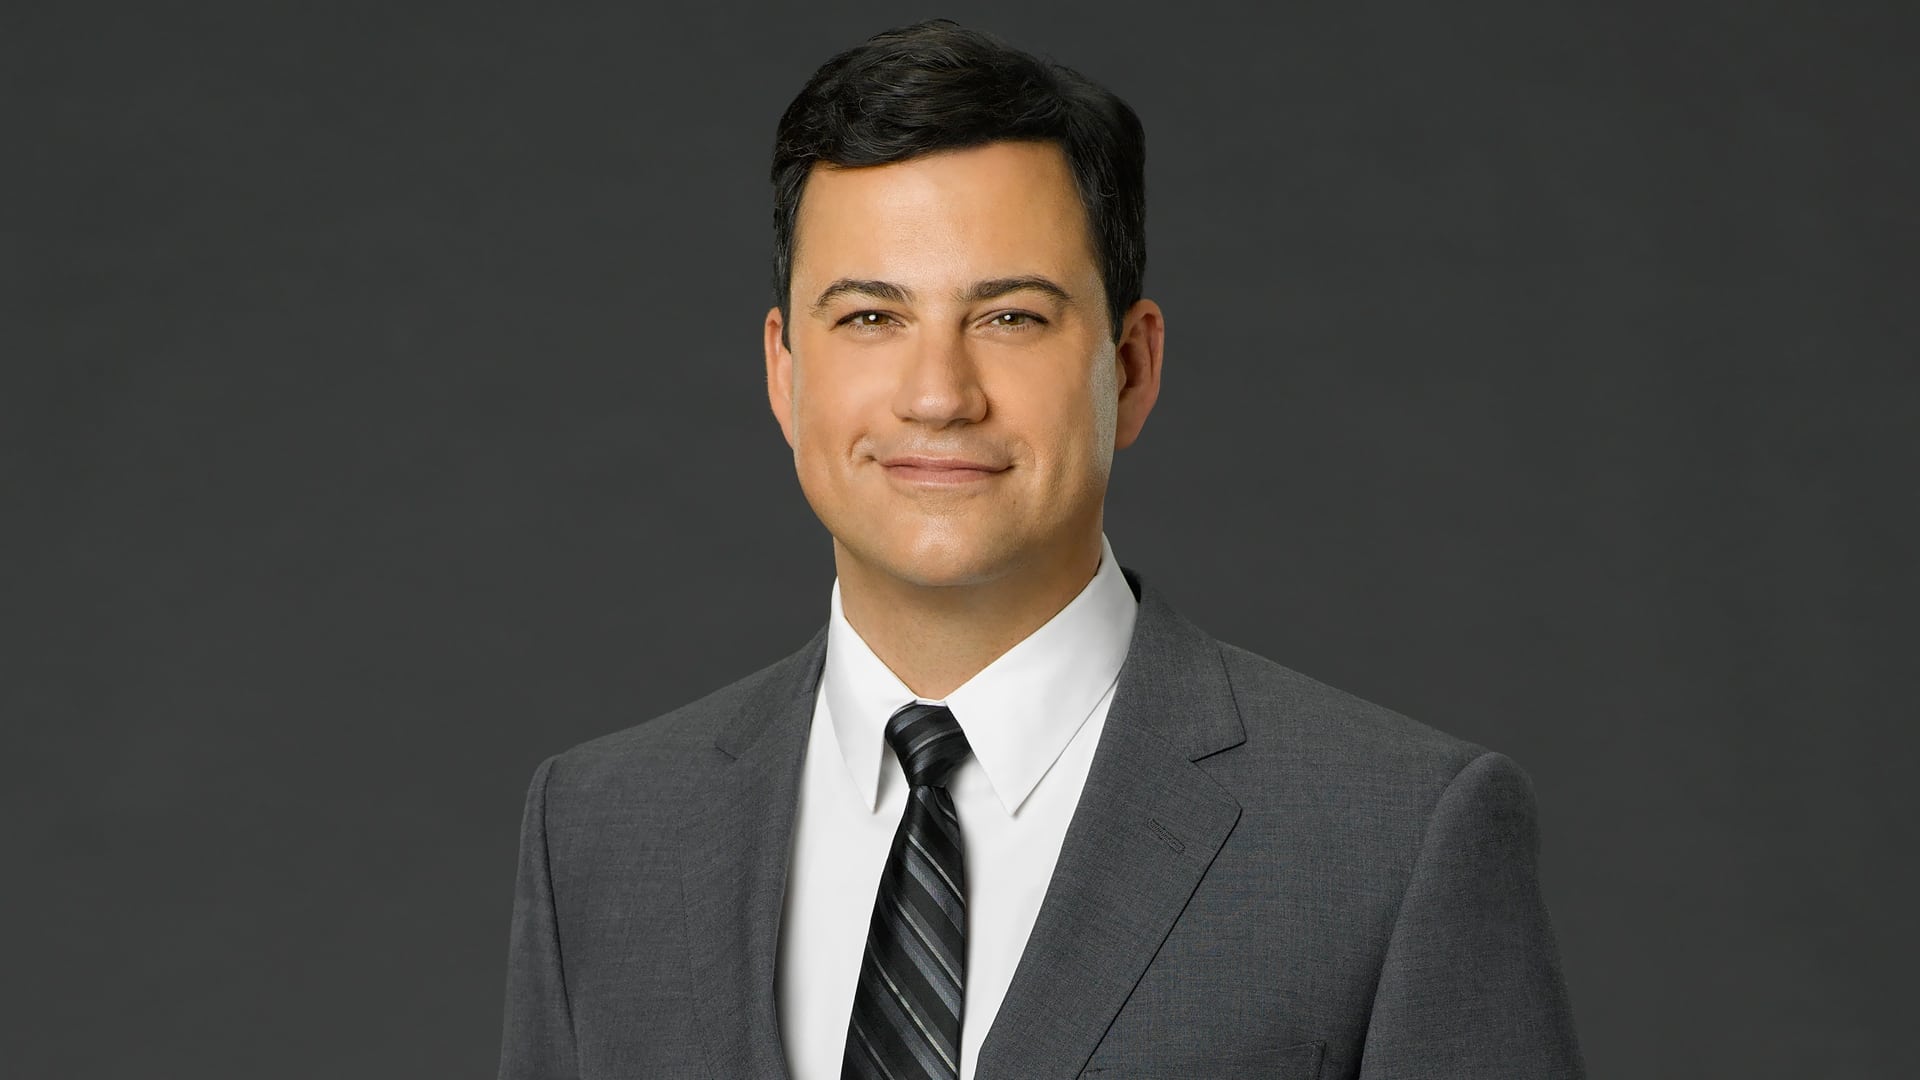 Jimmy Kimmel Live! - Season 22 Episode 81